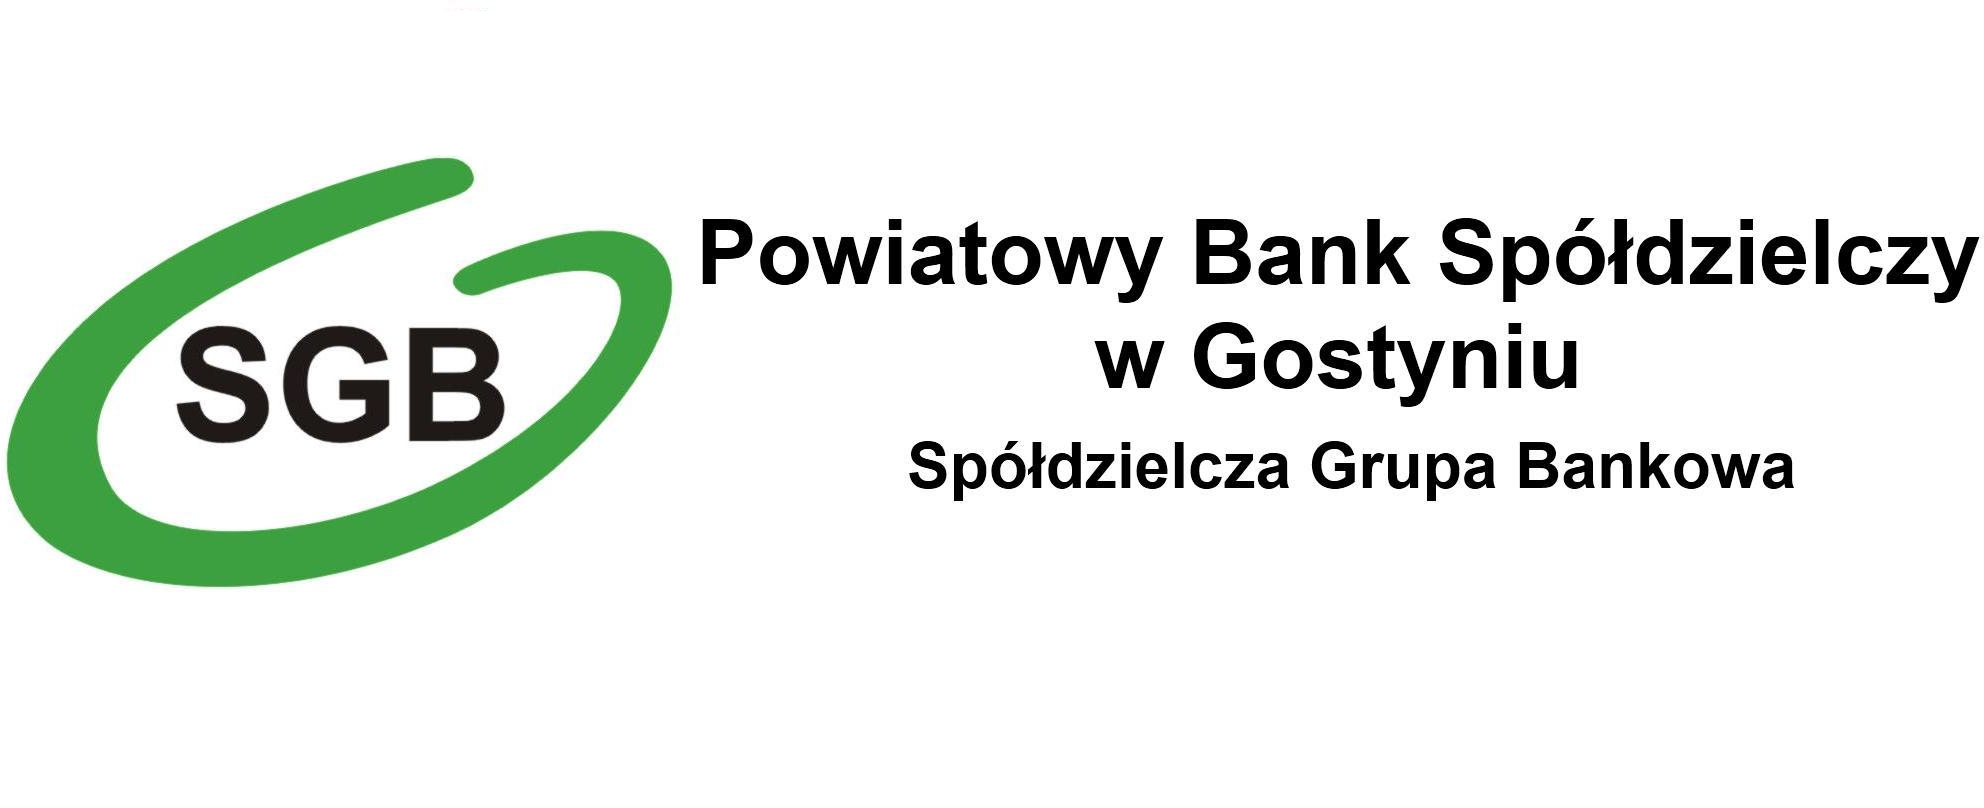 Władze Banku - Powiatowy Bank Spółdzielczy w Gostyniu